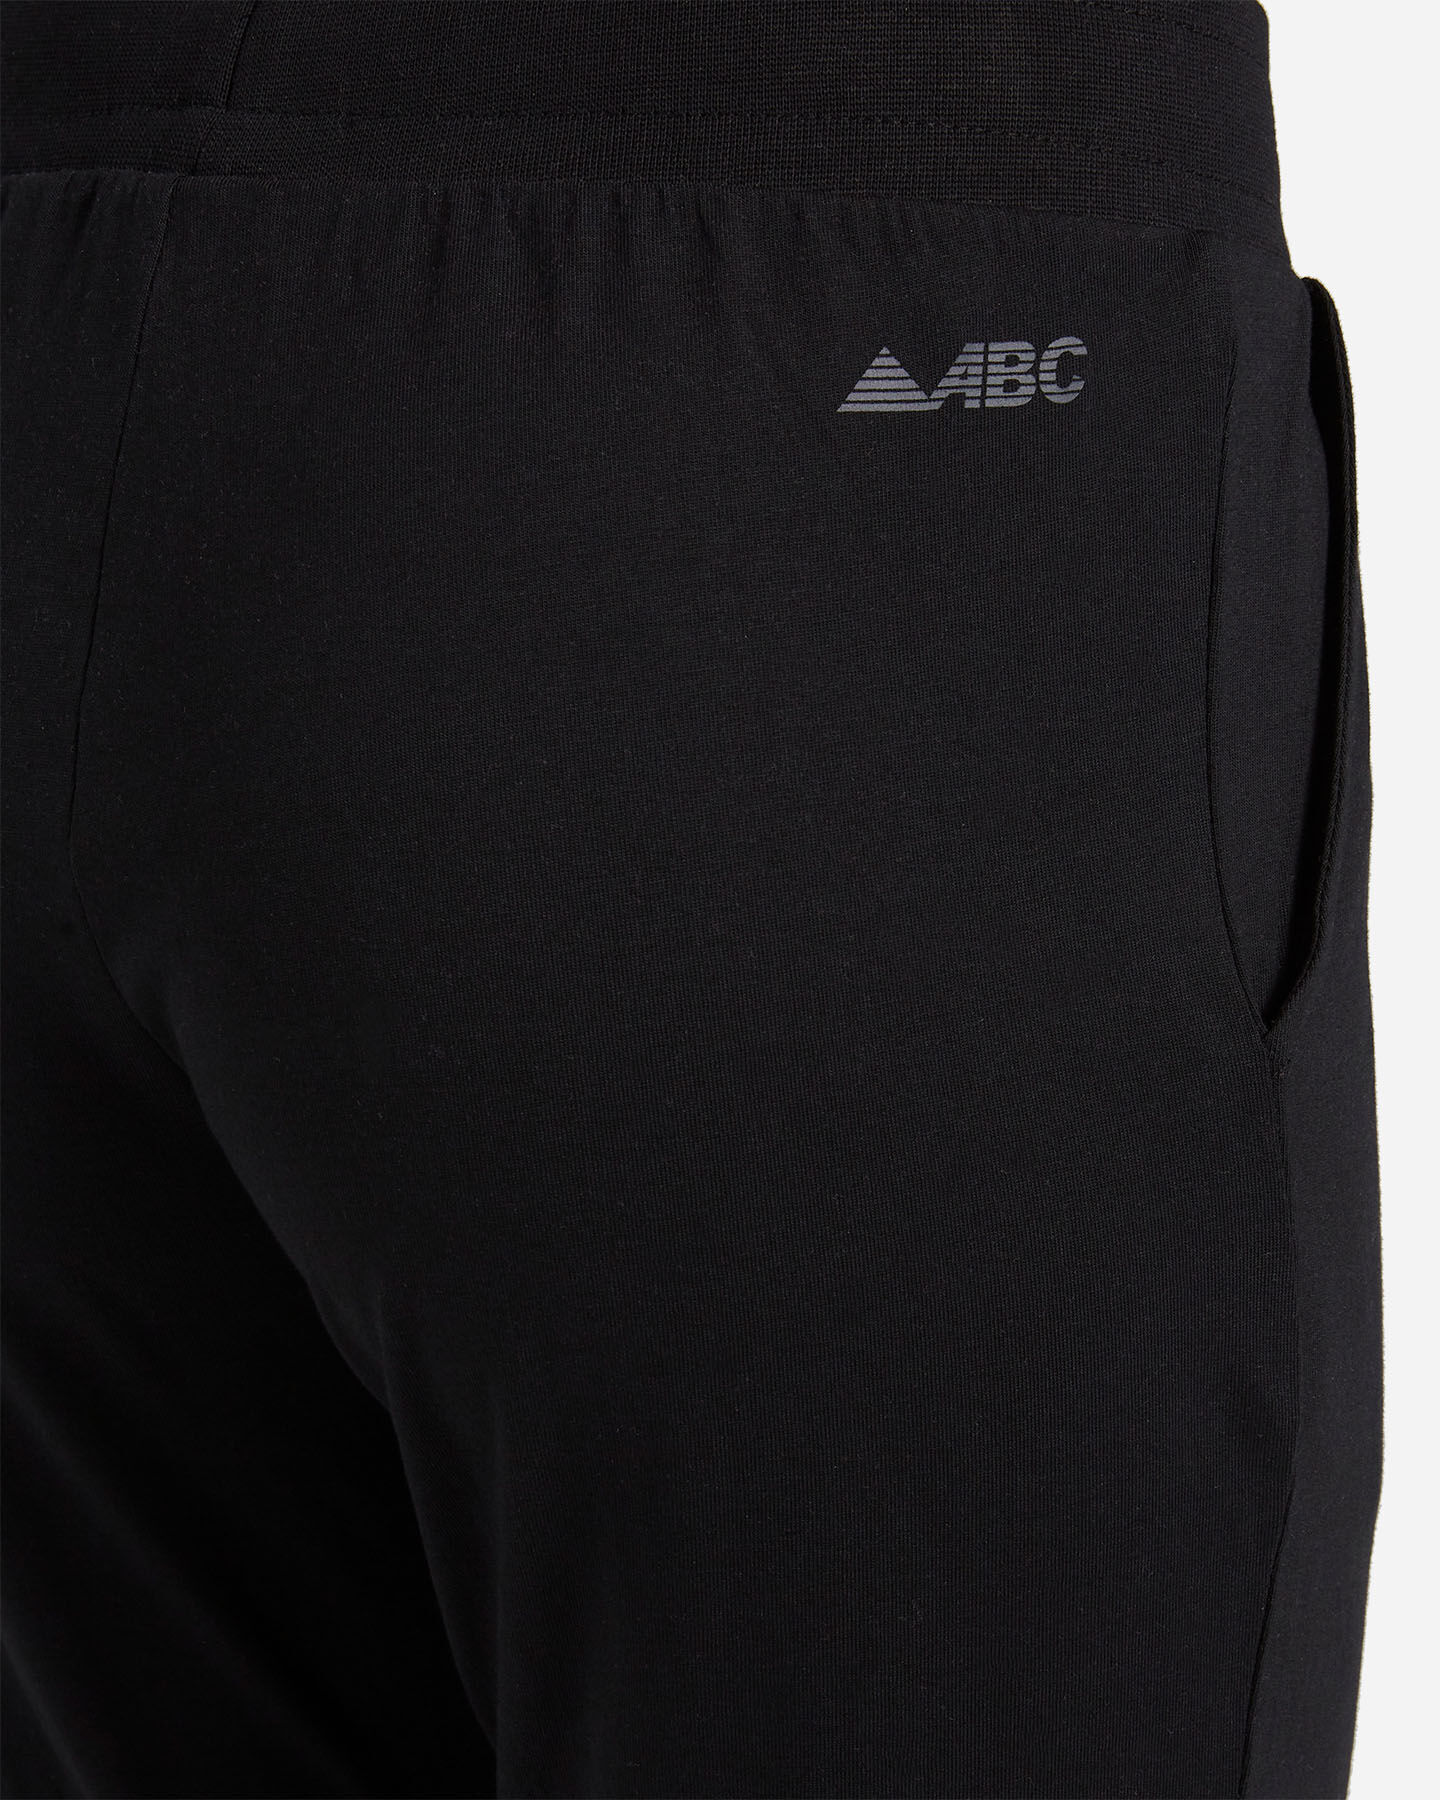  Pantalone ABC JERSEY W S5296354|050|XS scatto 3